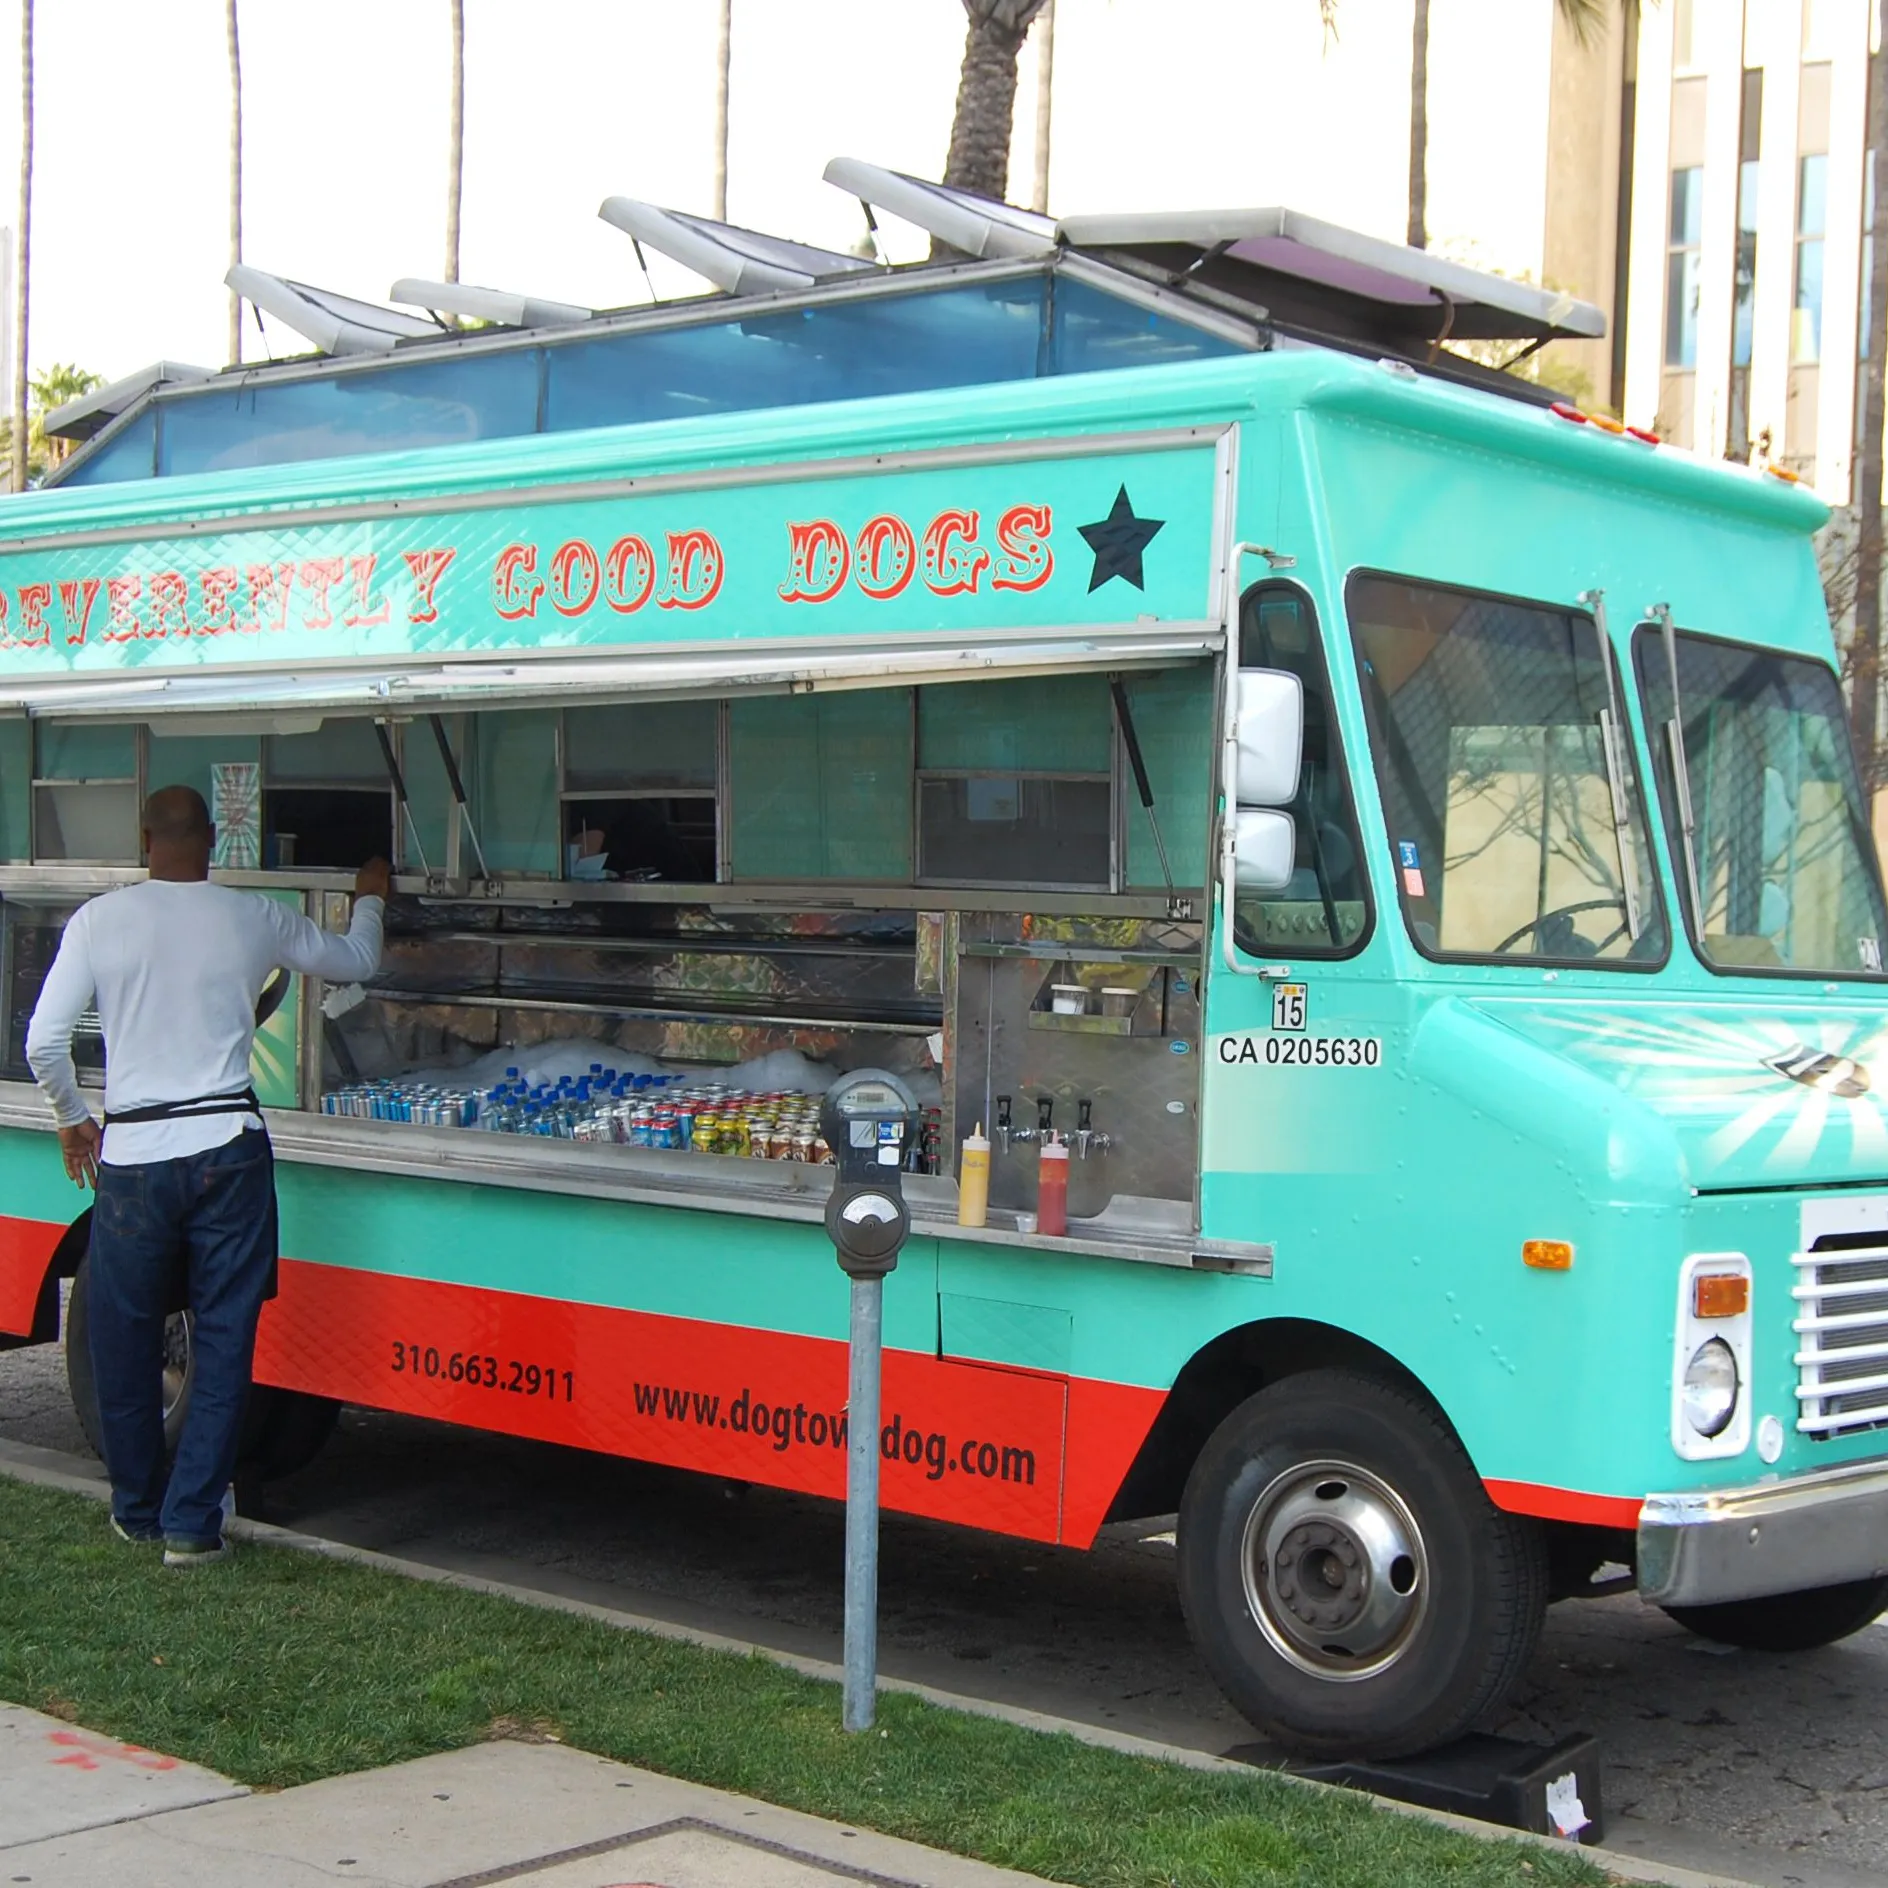 Недорогой новый мобильный грузовик для фаст-фуда для продажи закусок смузи пицца барбекю хот-дог кофе мороженое helados торговый автомобиль